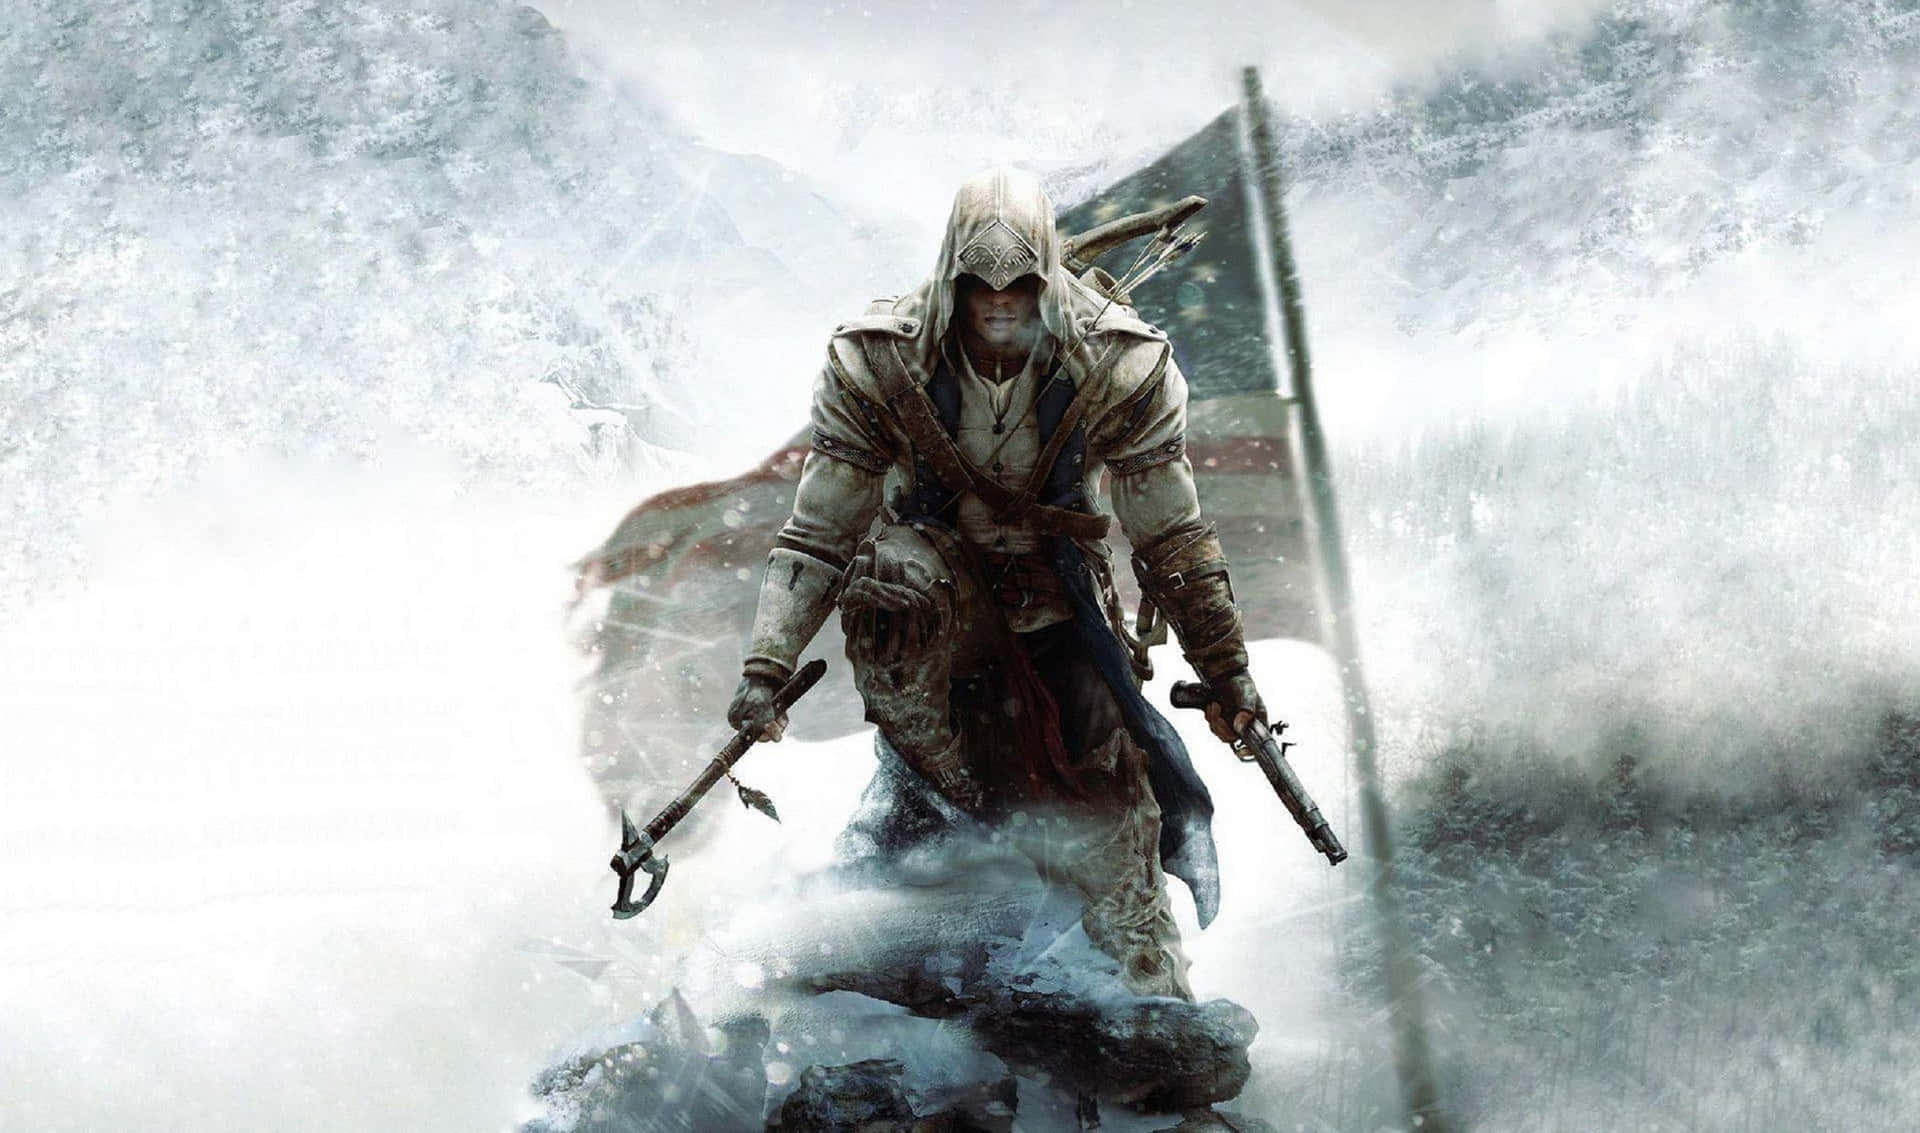 Fundosde Tela De Assassin's Creed Odyssey De Ratonhnhaké:ton Em 2440x1440.